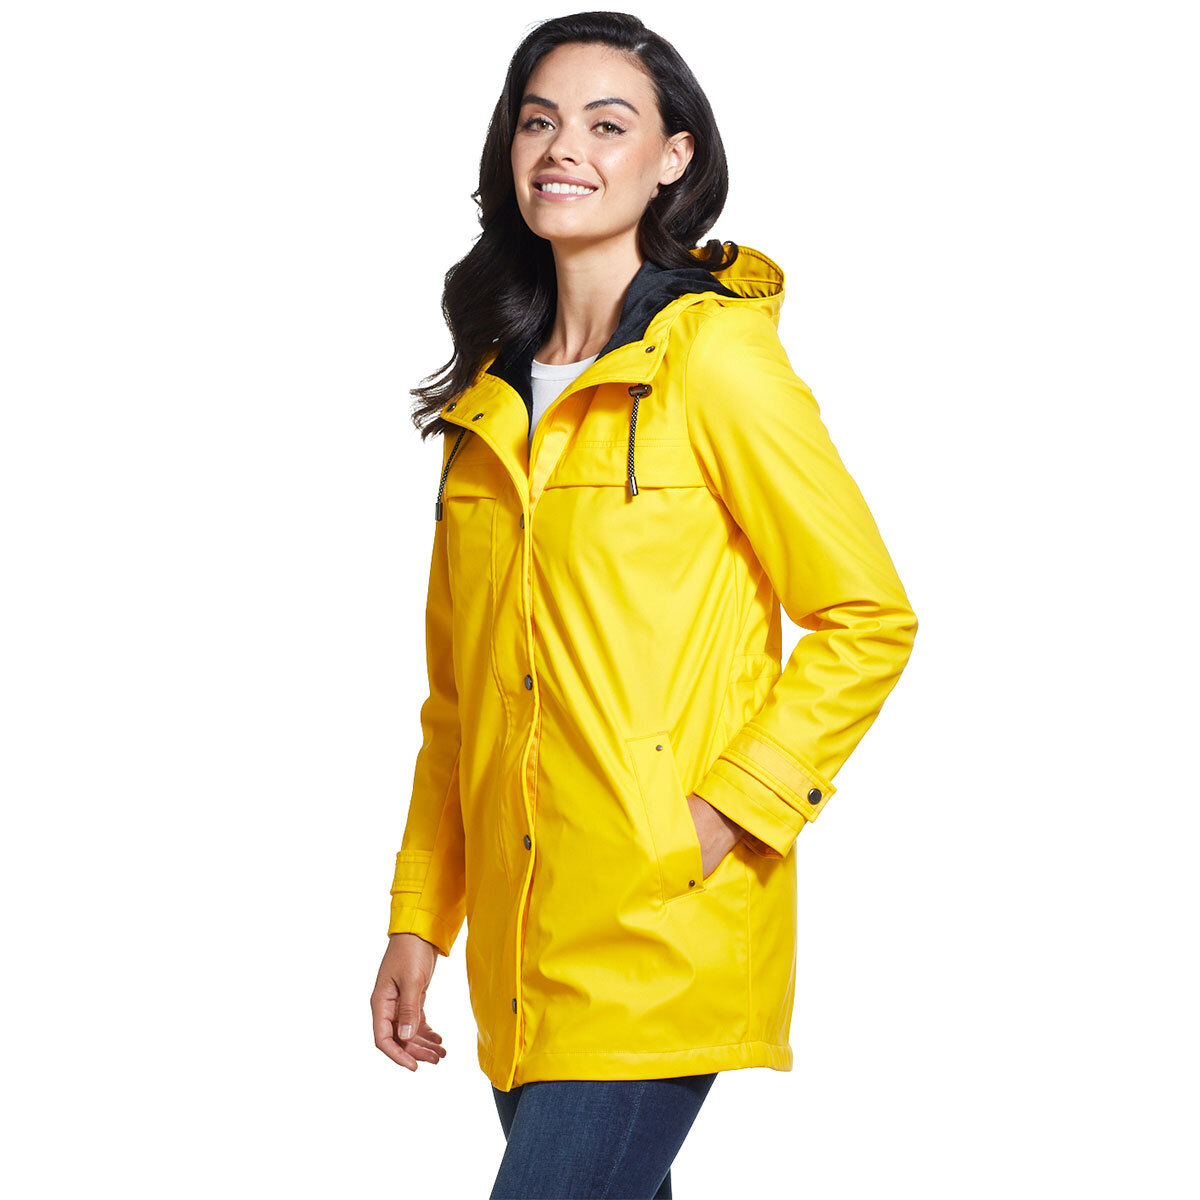 Weatherproof Women's Slicker Jacket in Yellow, Extra Large | Costco UK